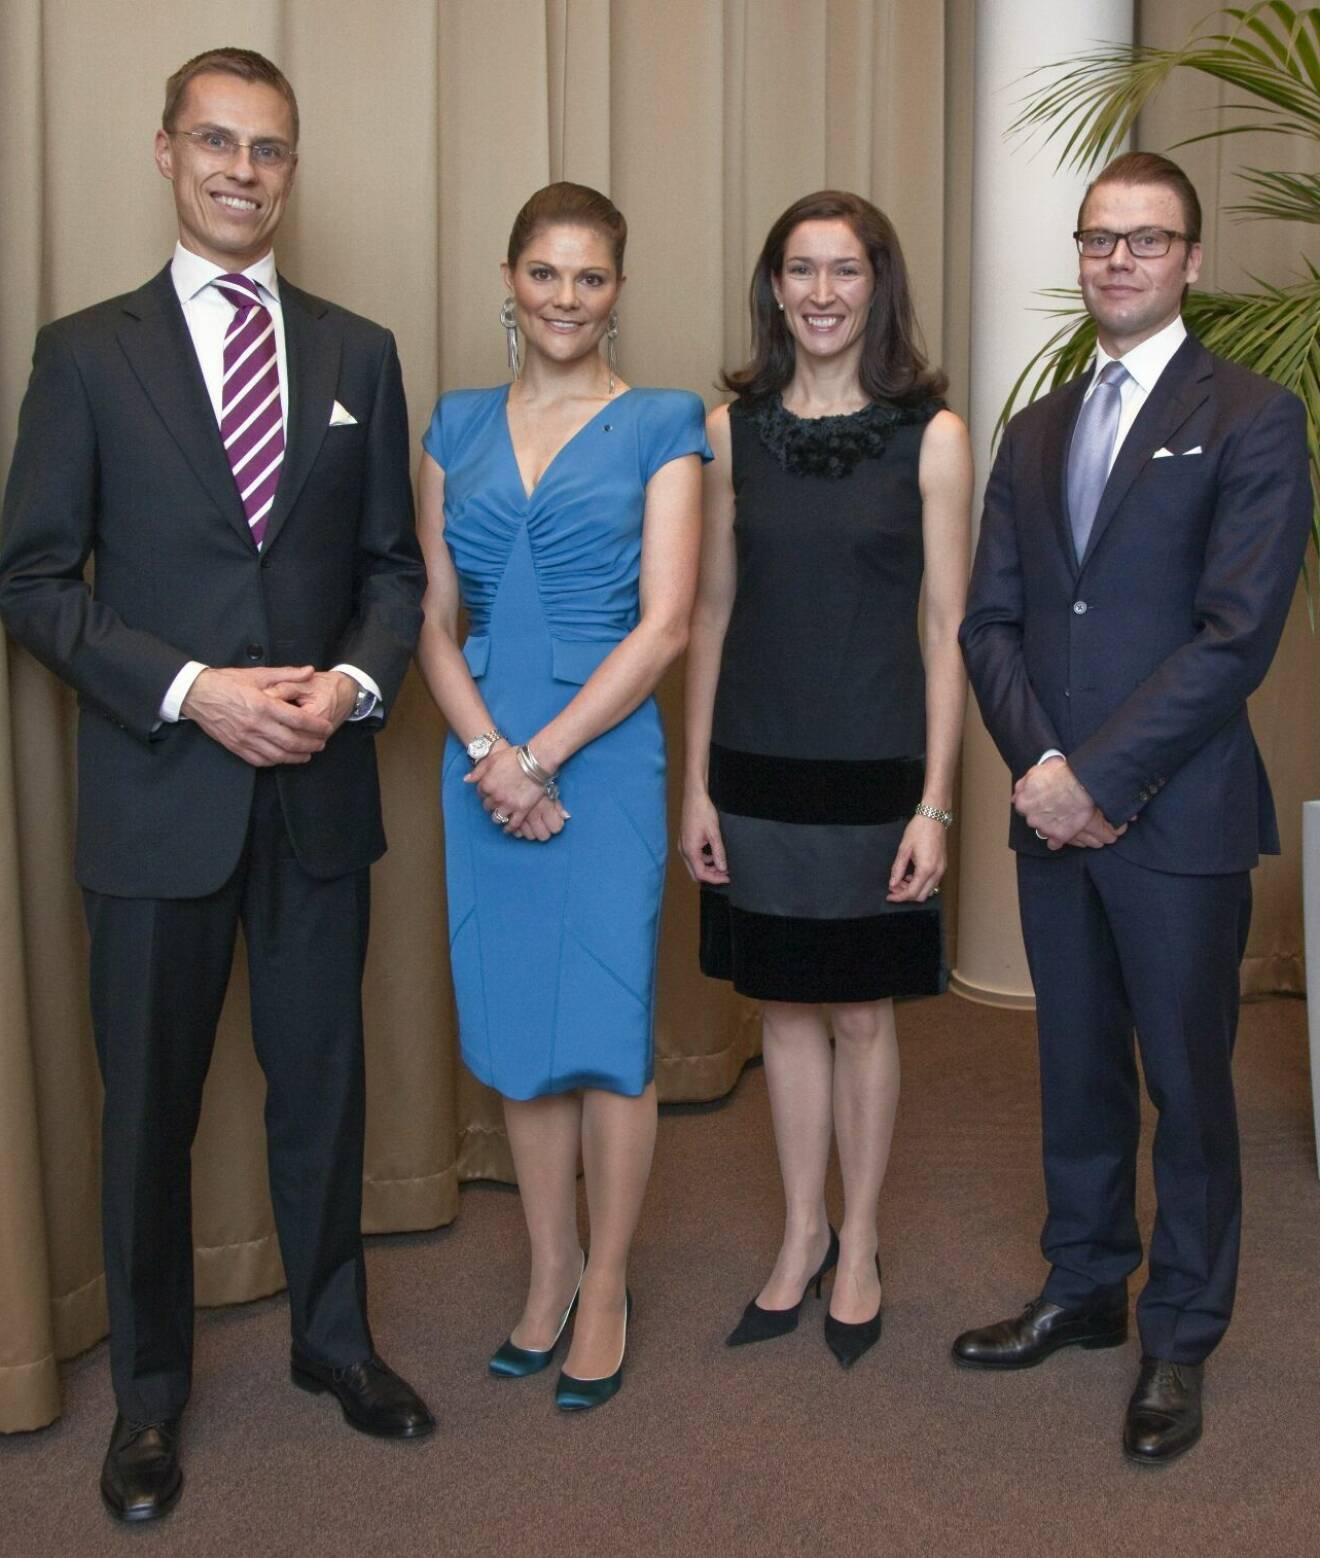 Kronprinsessan Victoria och prins Daniel med Alexander Stubb och hans fru Suzanne Innes-Stubb år 2010